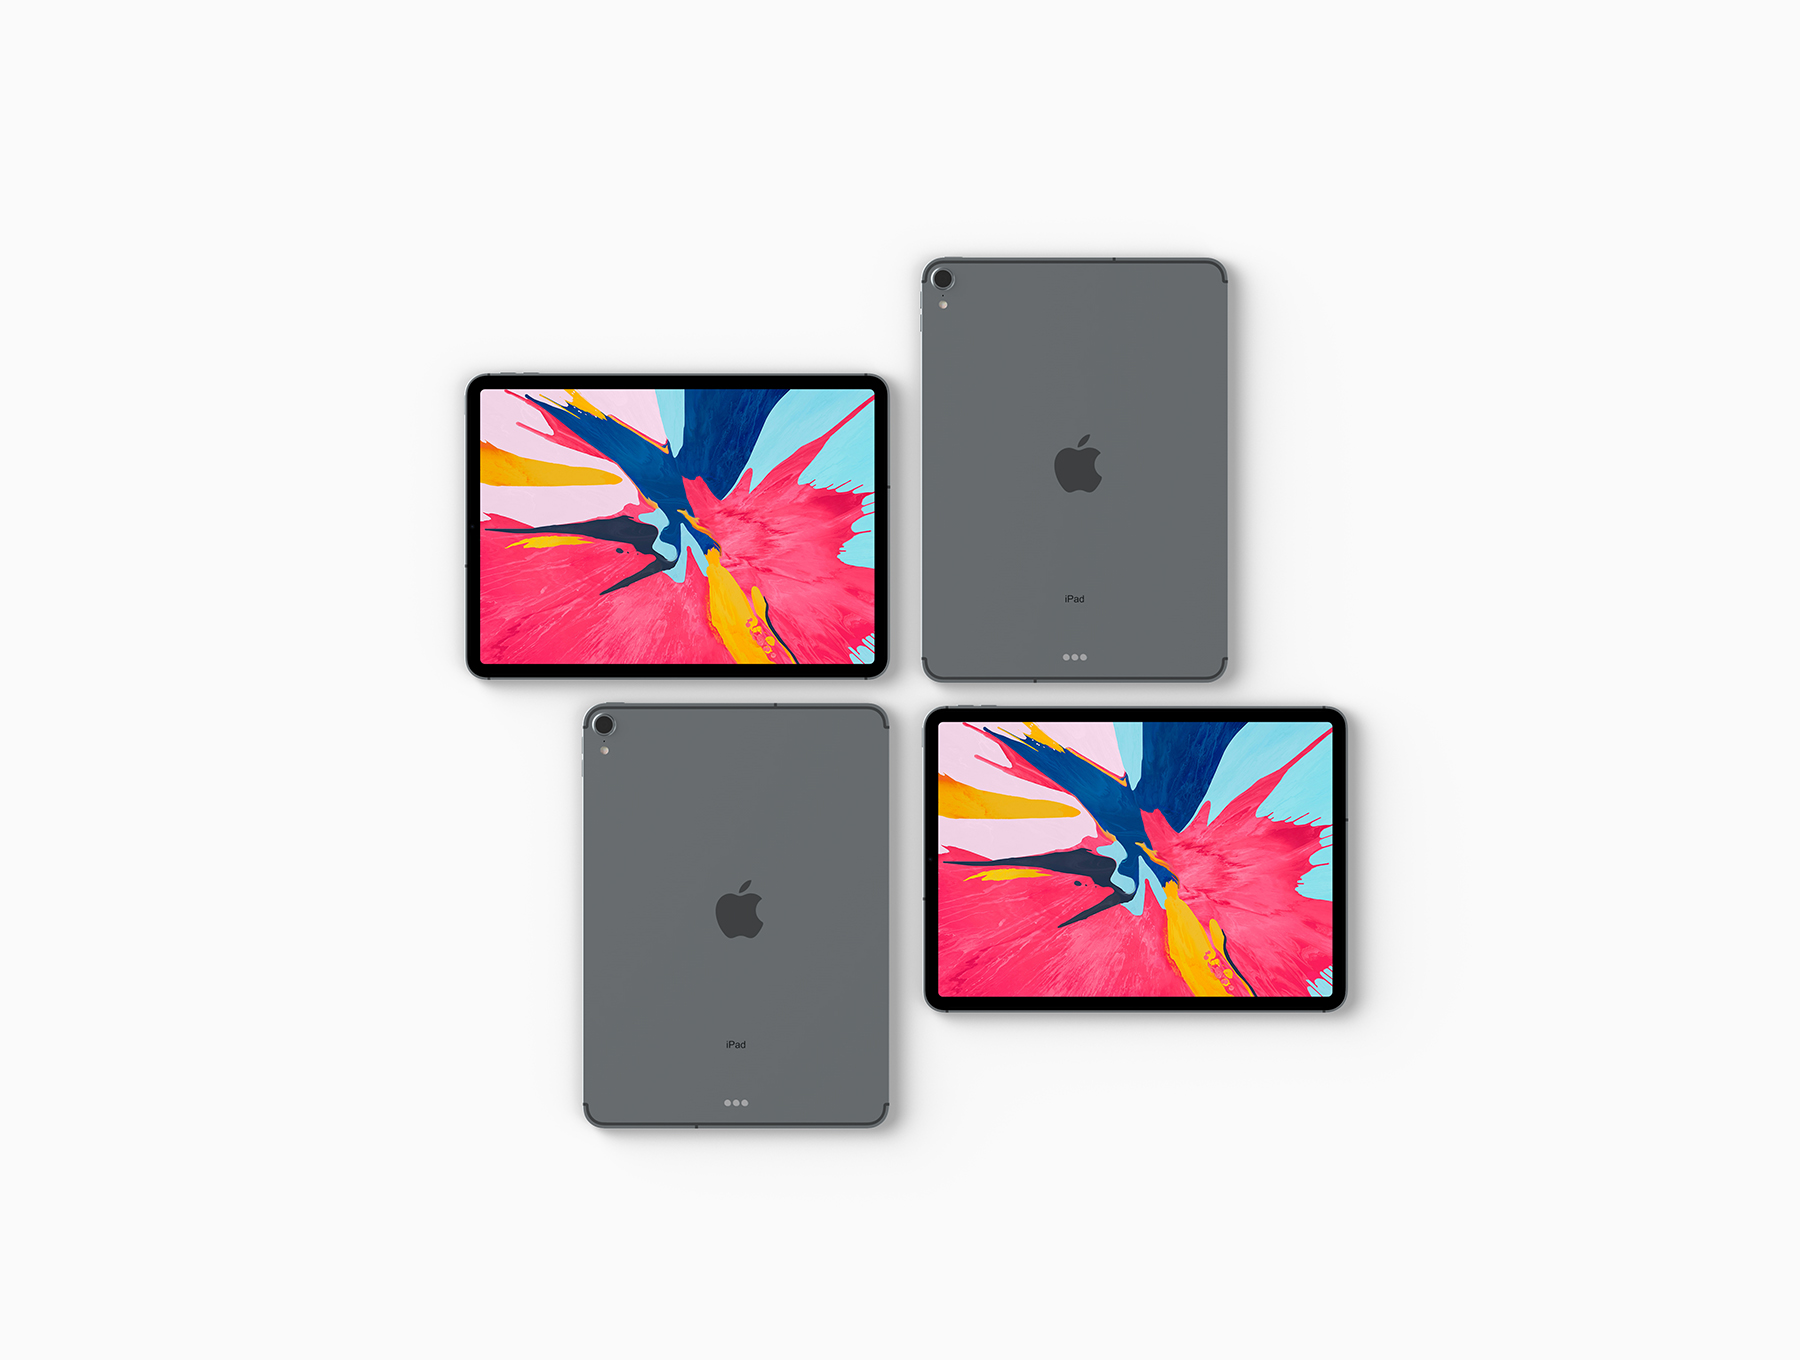 iPad Pro 2018展示样机下载 [PSD]插图(4)